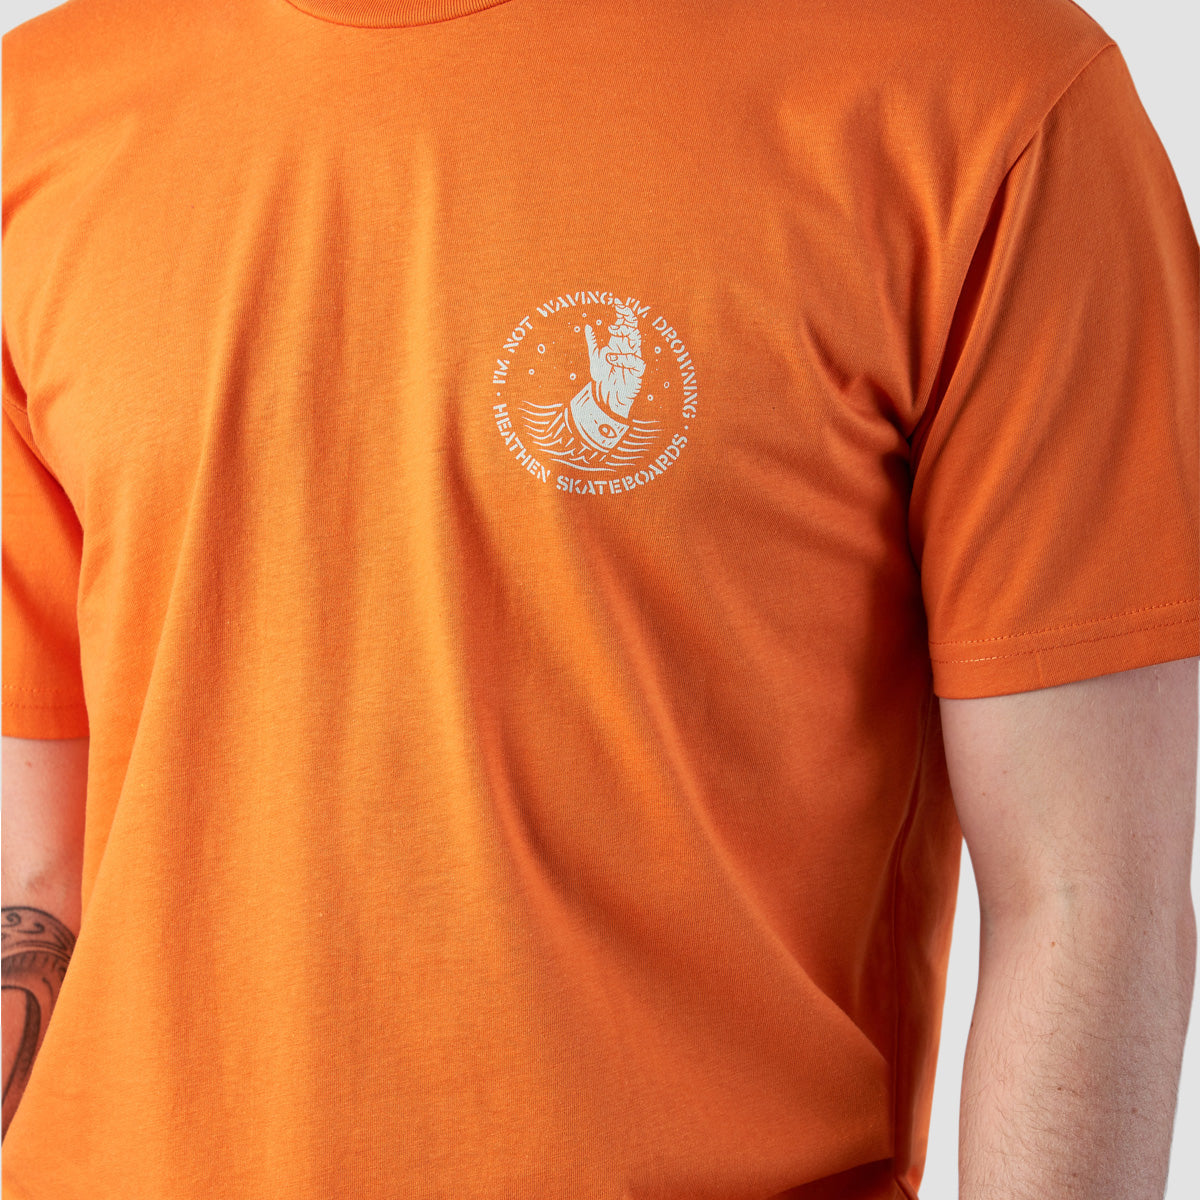 Heathen Drowning T-Shirt Orange